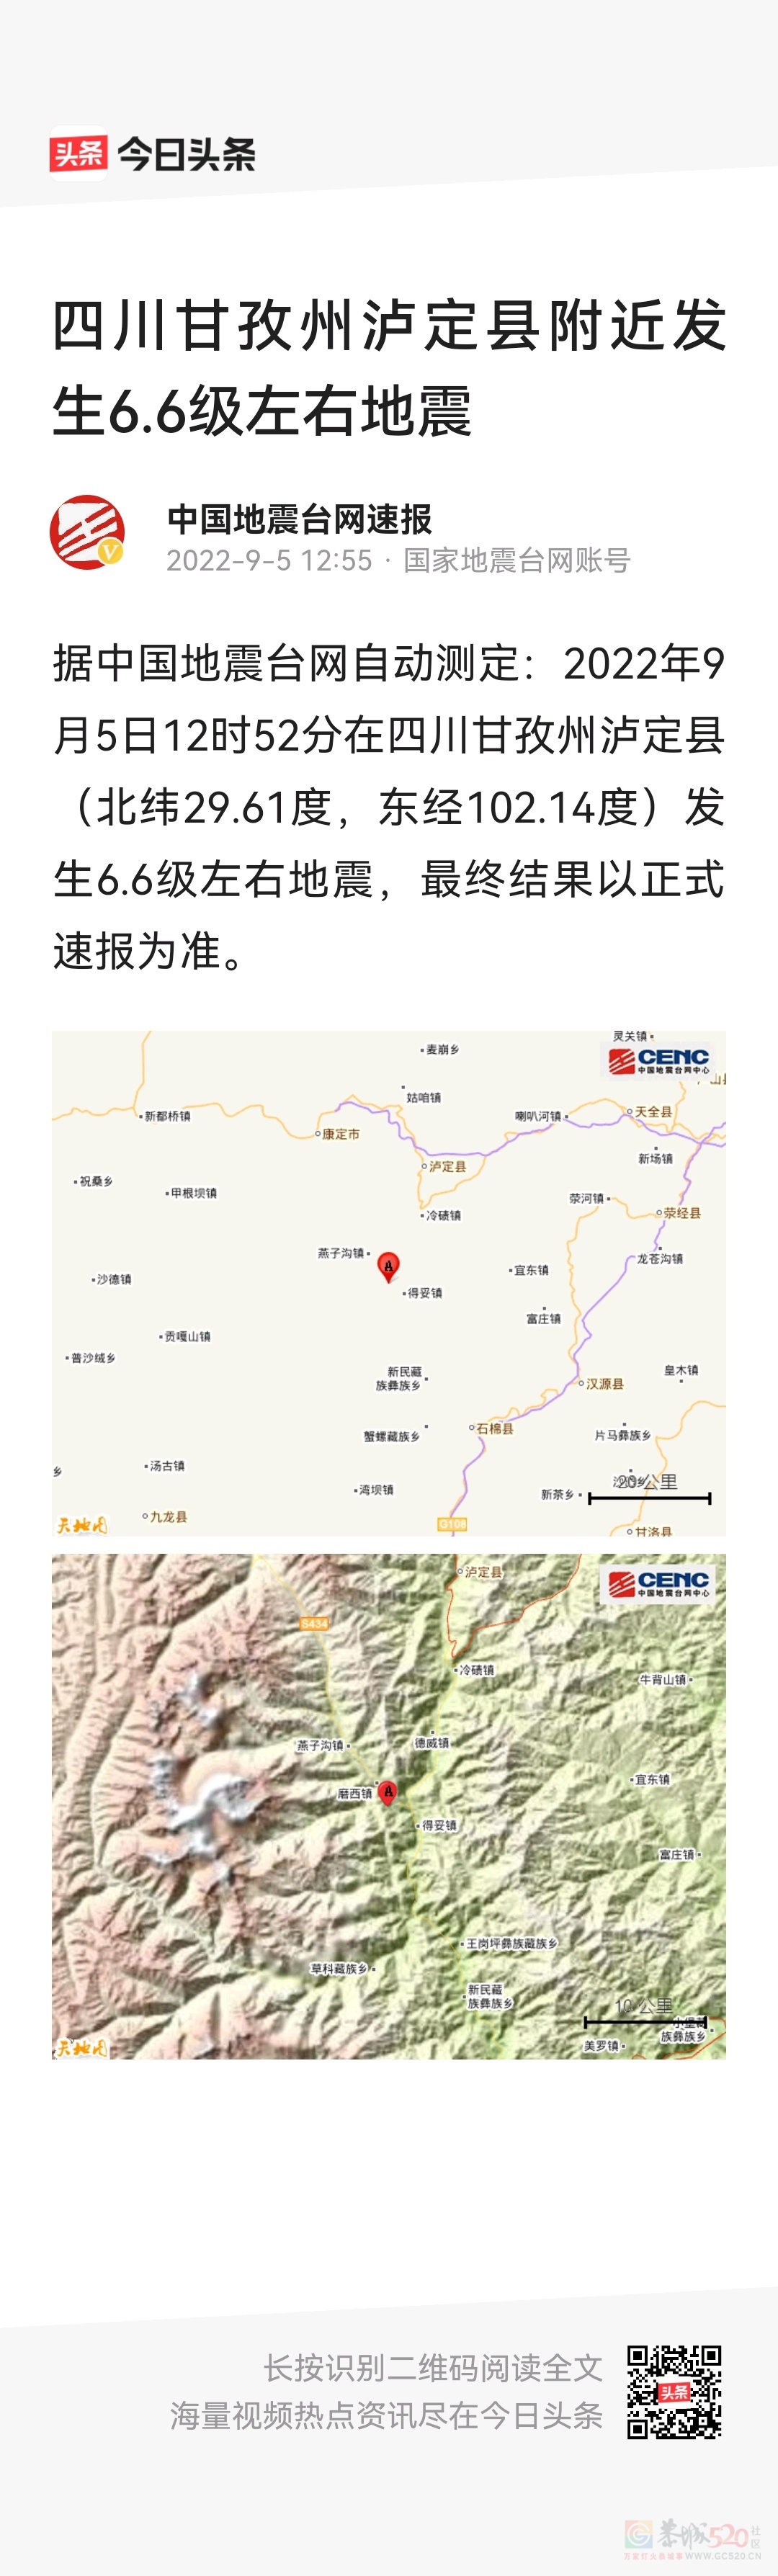 就在刚刚四川甘孜州发生6.6级地震724 / 作者:猛龙 / 帖子ID:299109